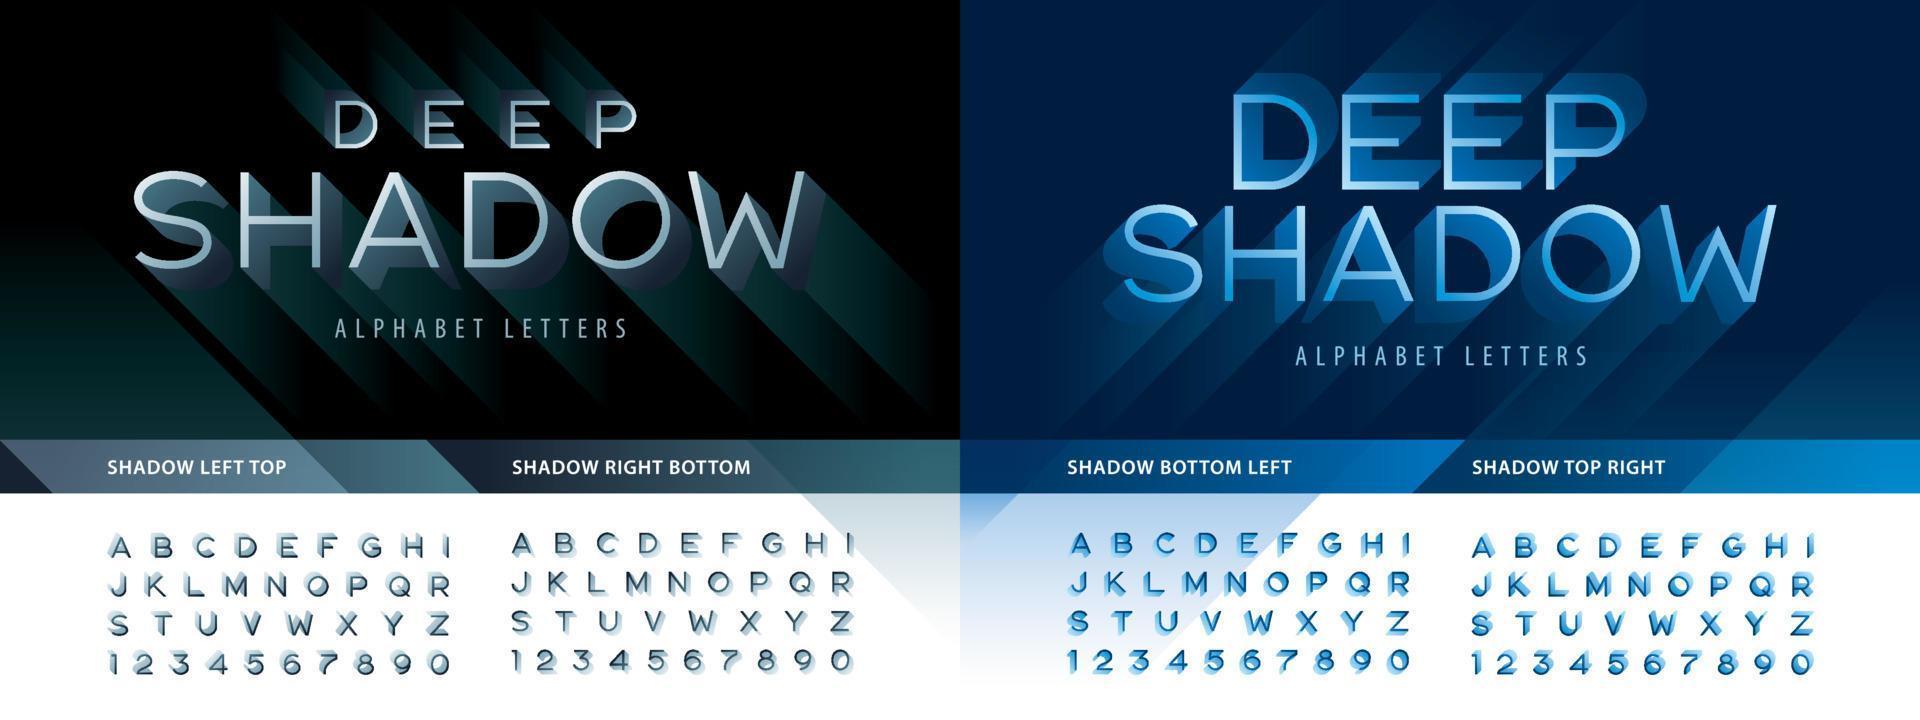 letras e números abstratos do alfabeto de sombra profunda, fonte de estilo de linha moderna com sombra vetor